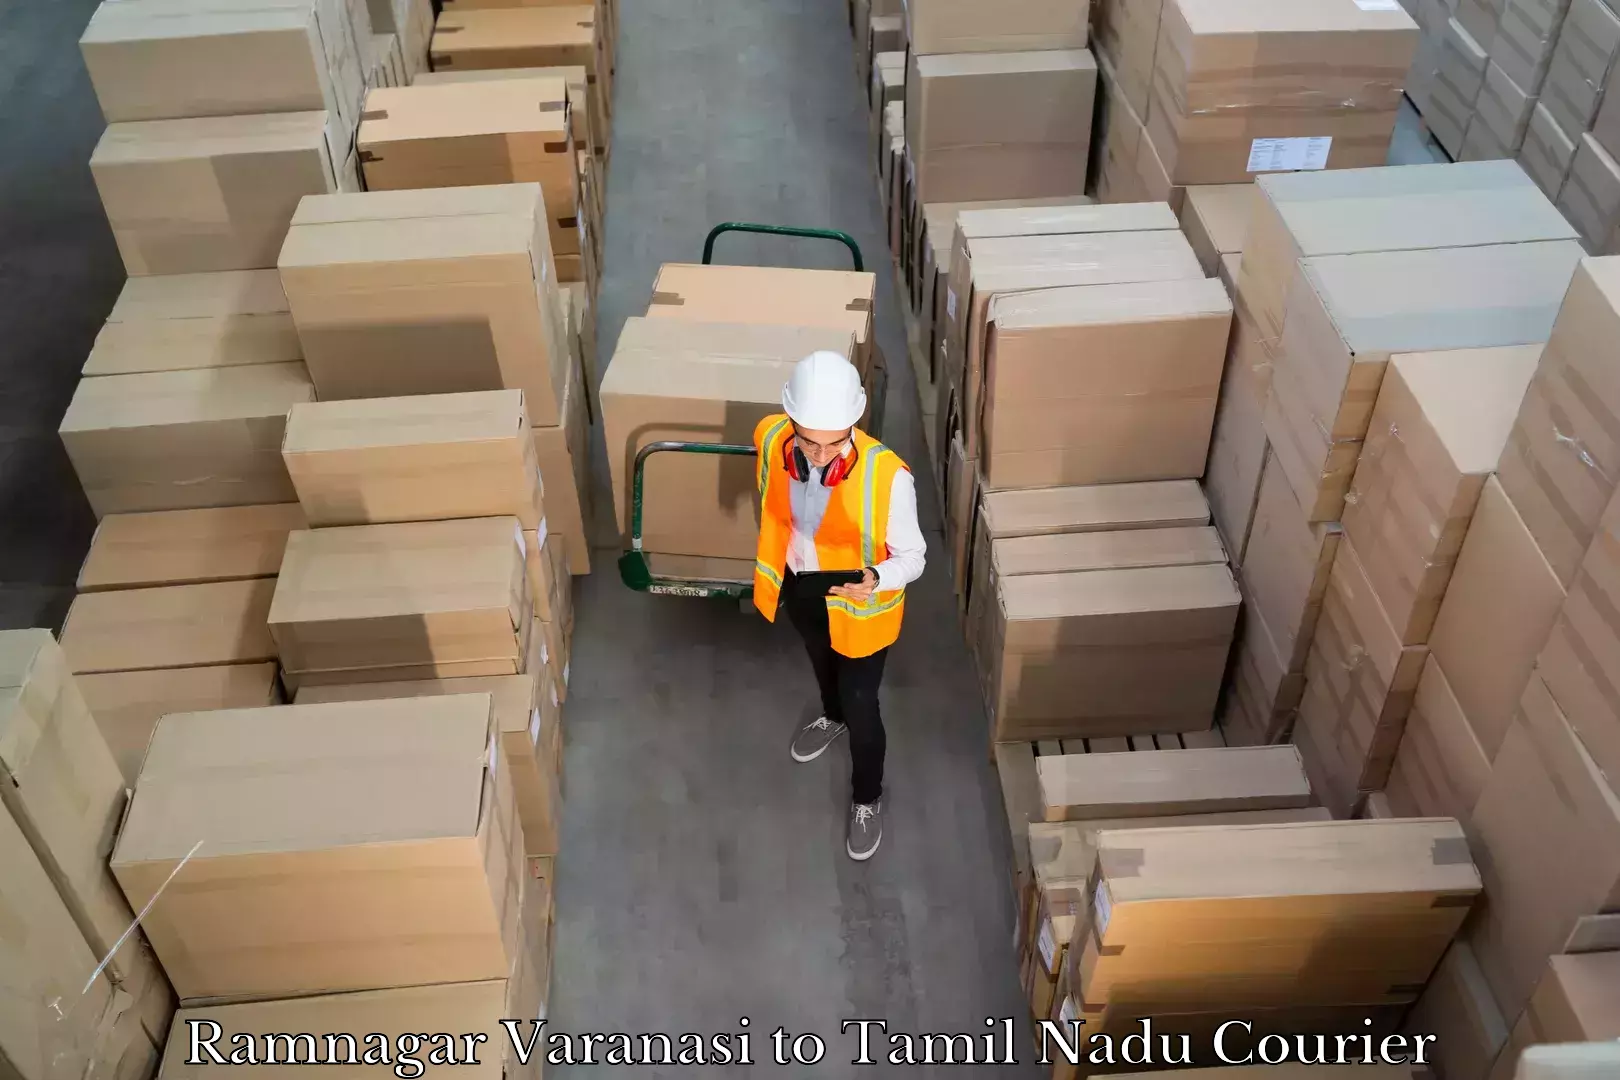 Luggage shipment processing Ramnagar Varanasi to Tamil Nadu